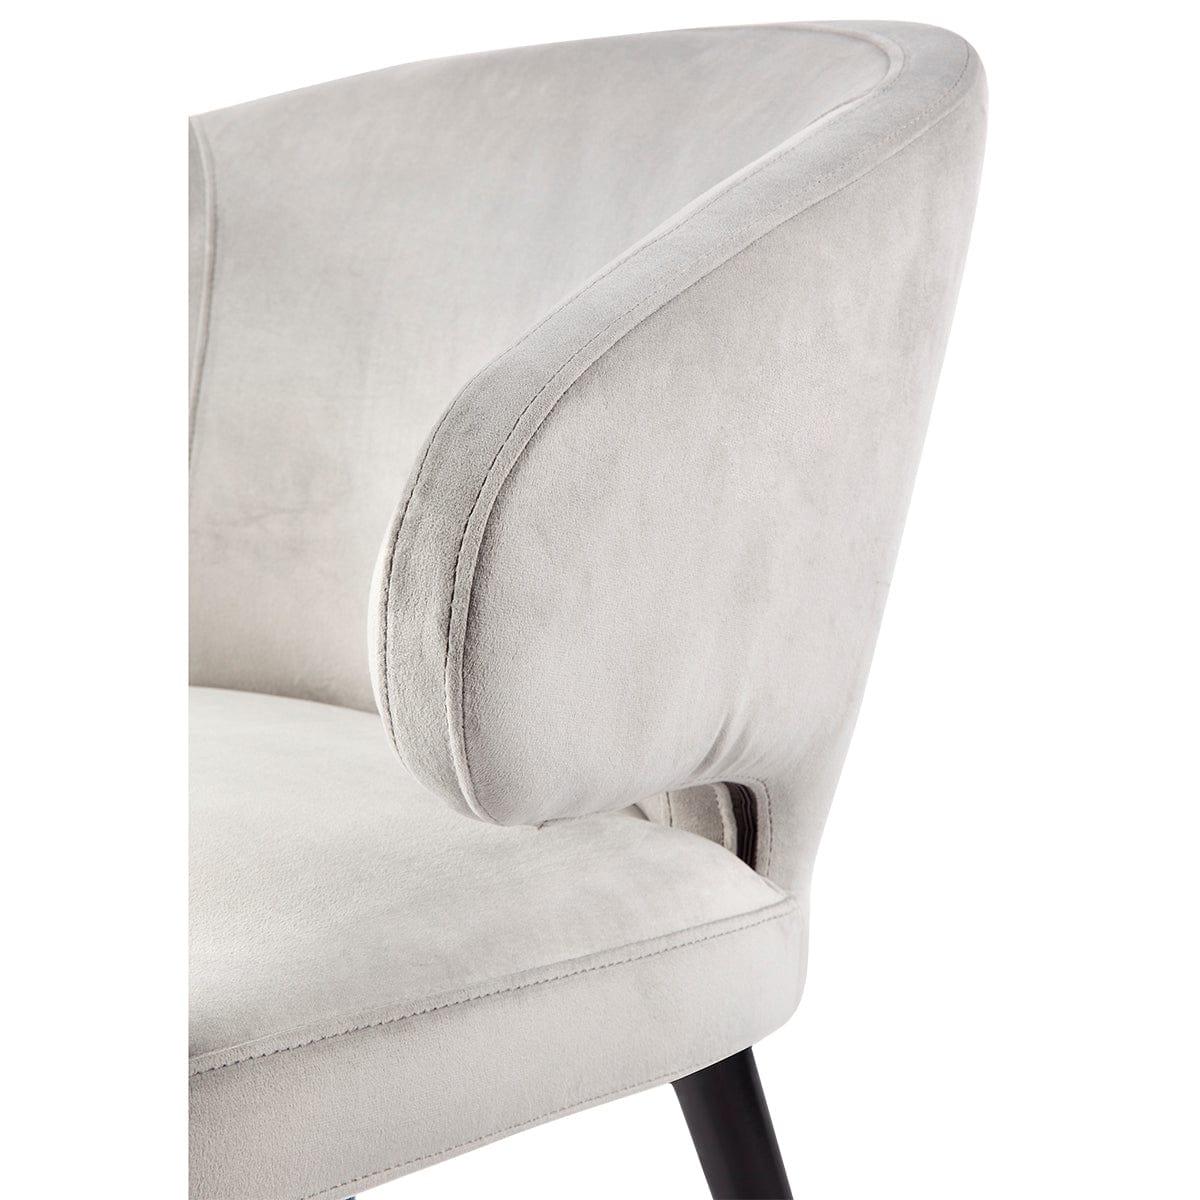 House Journey Harlow Black Dining Chair - Grey Velvet